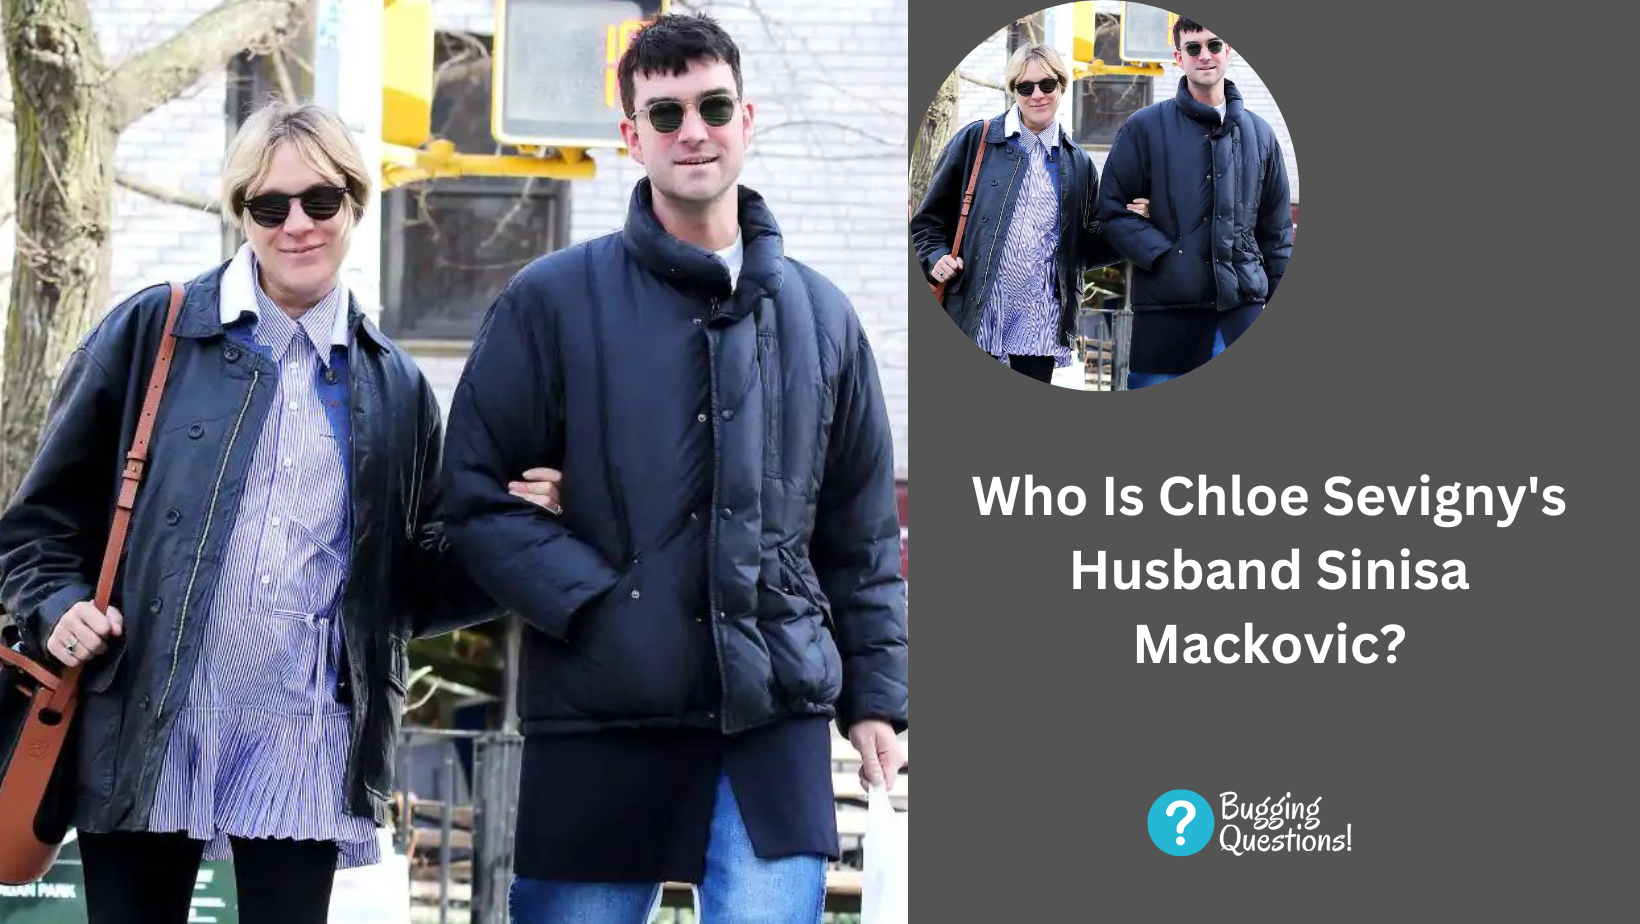 Who Is Chloe Sevigny's Husband Sinisa Mackovic?